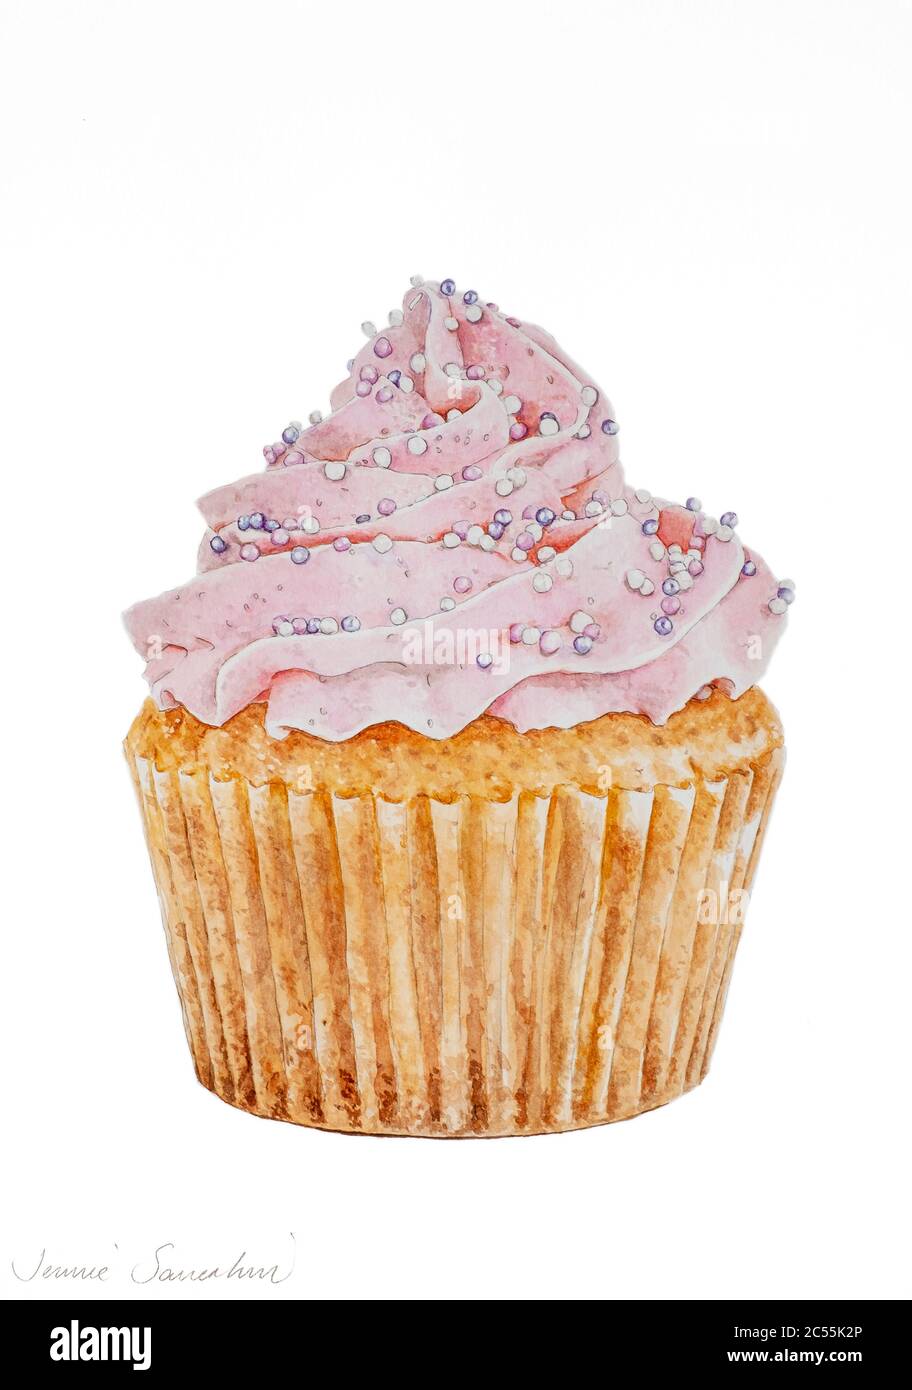 Aquarell-Malerei Illustration einer Tasse Kuchen mit rosa Vereisung und Streuseln. Stockfoto